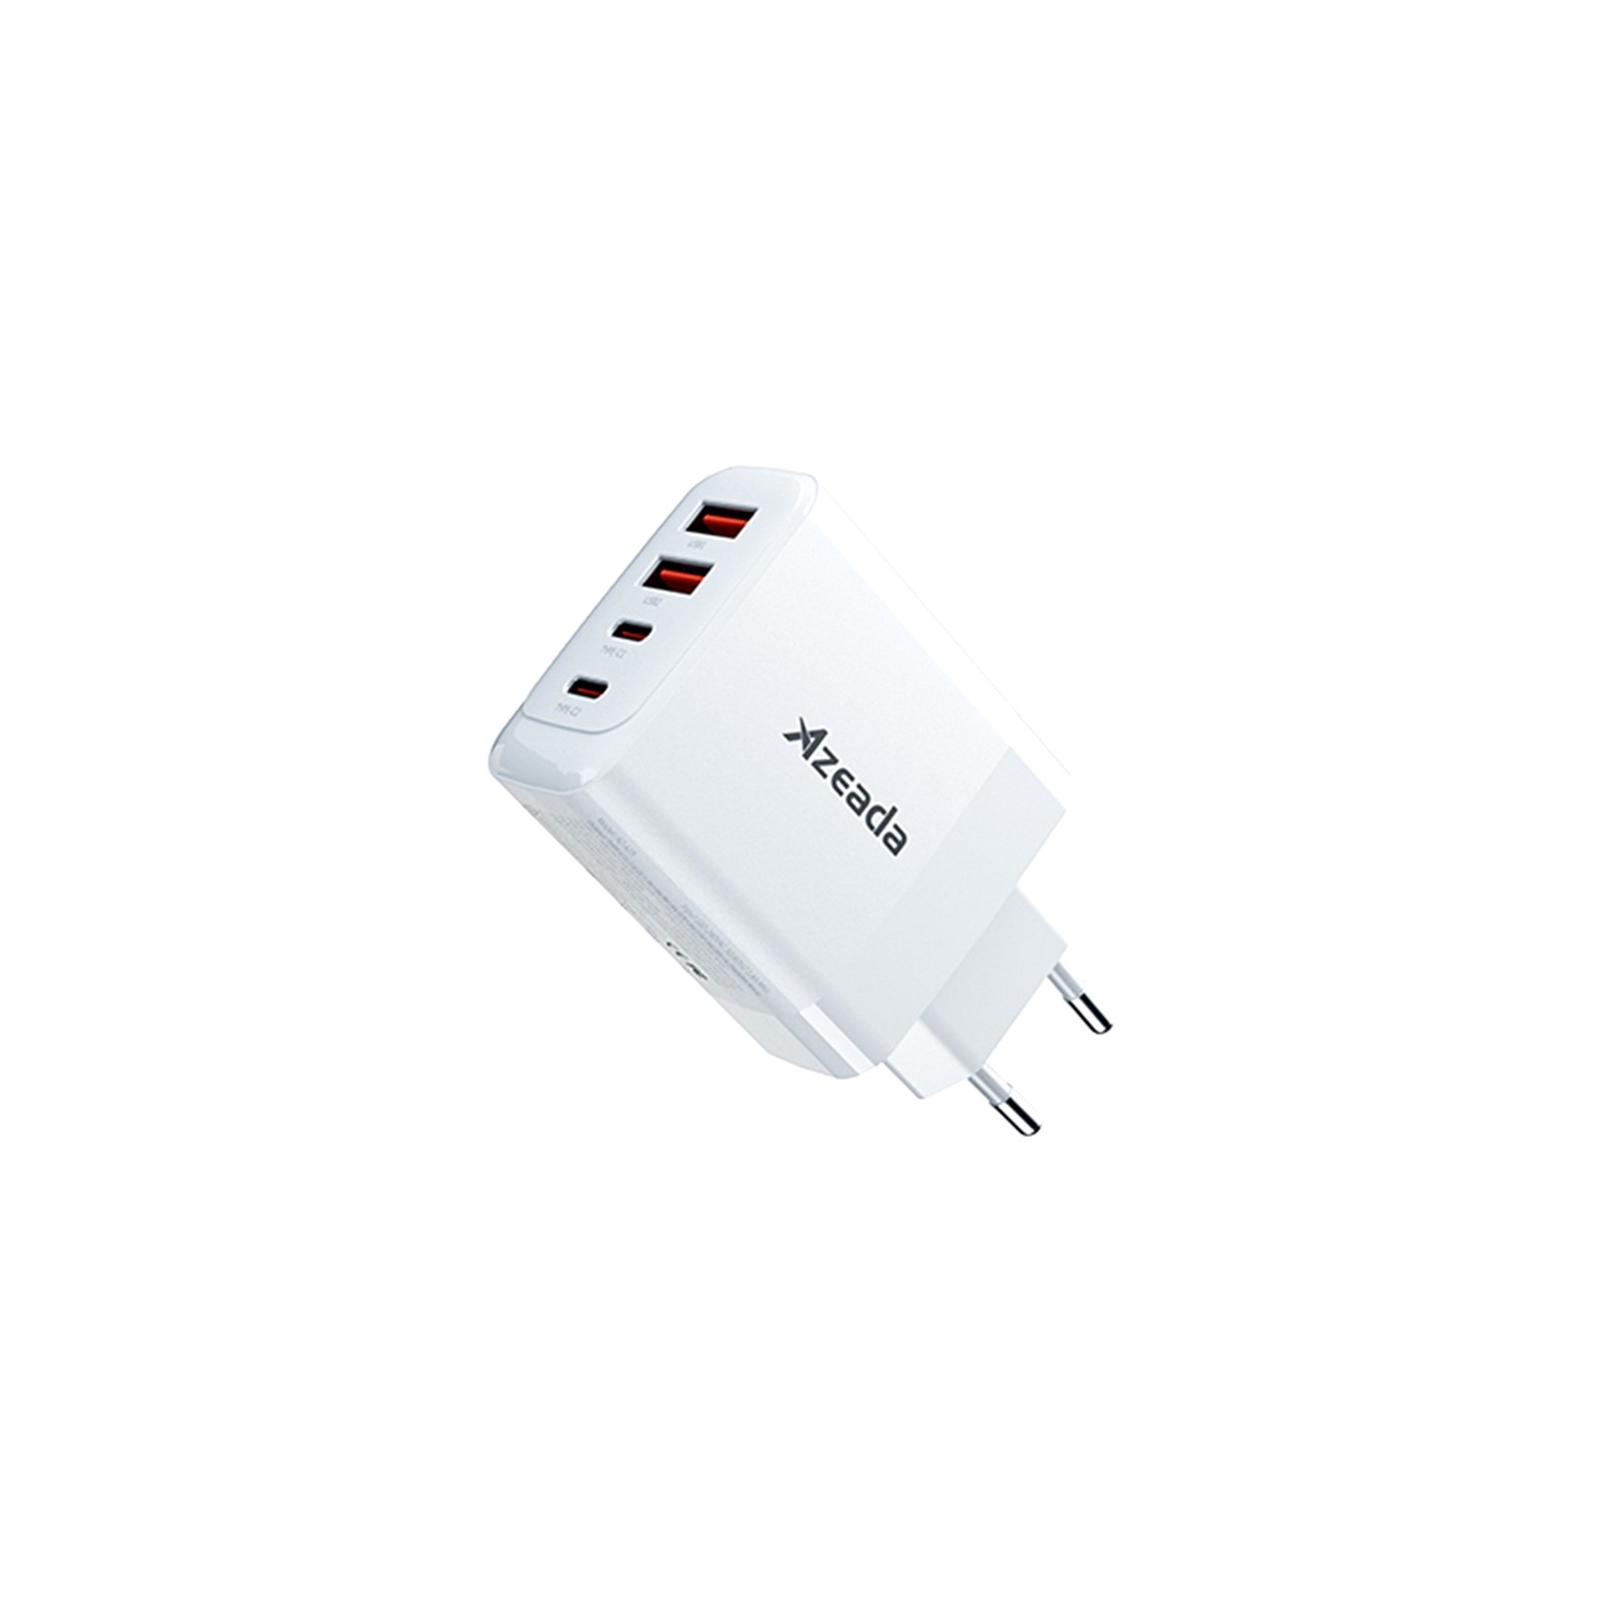 Зарядний пристрій Proda AZEADA Seagulls AZ-19 GaN5 65W USB-A (QC4.0) USB-C (PD3.0) orange (AZ-19-OR)